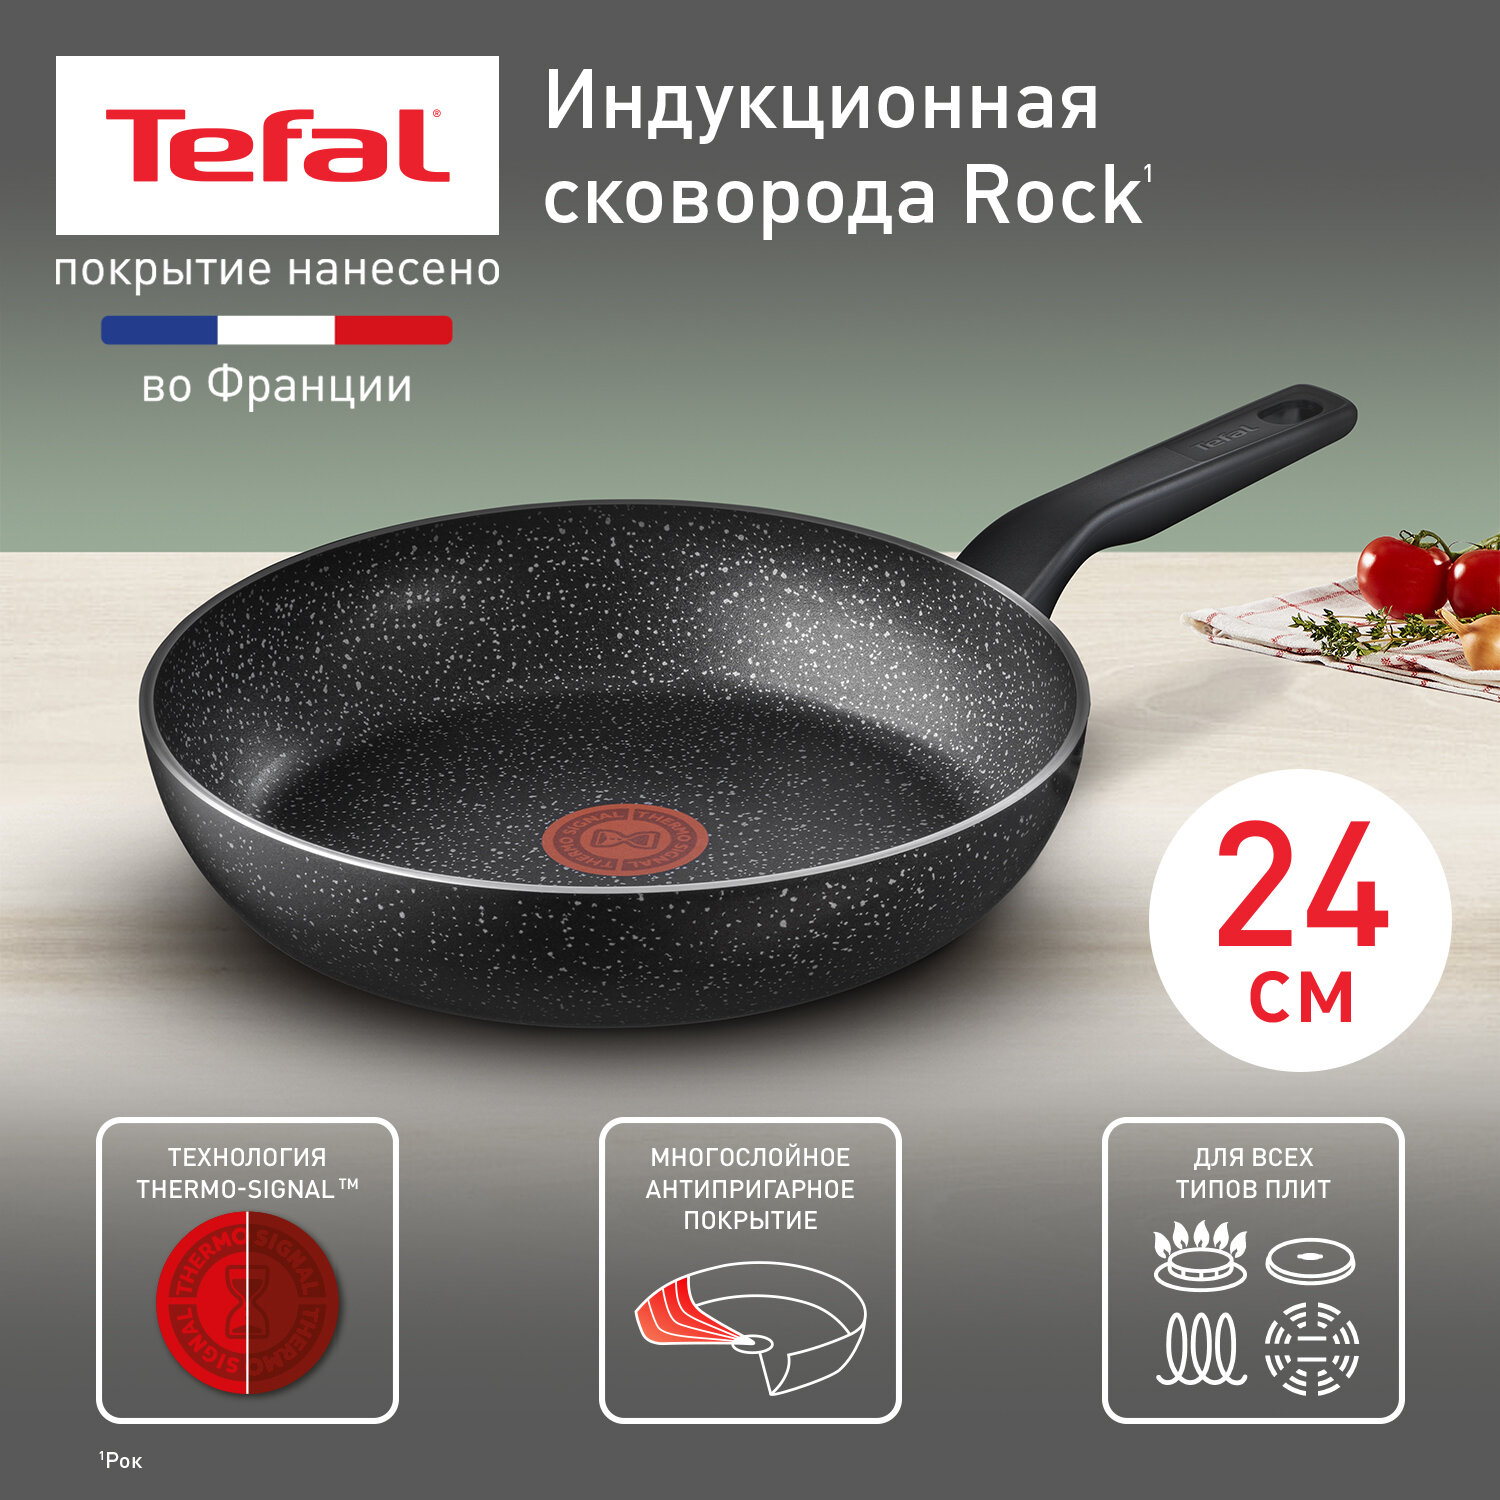 Сковорода Tefal 04225124 Rock, диаметр 24 см, с индикатором температуры, с антипригарным покрытием, для газовых, электрических и индукционных плит